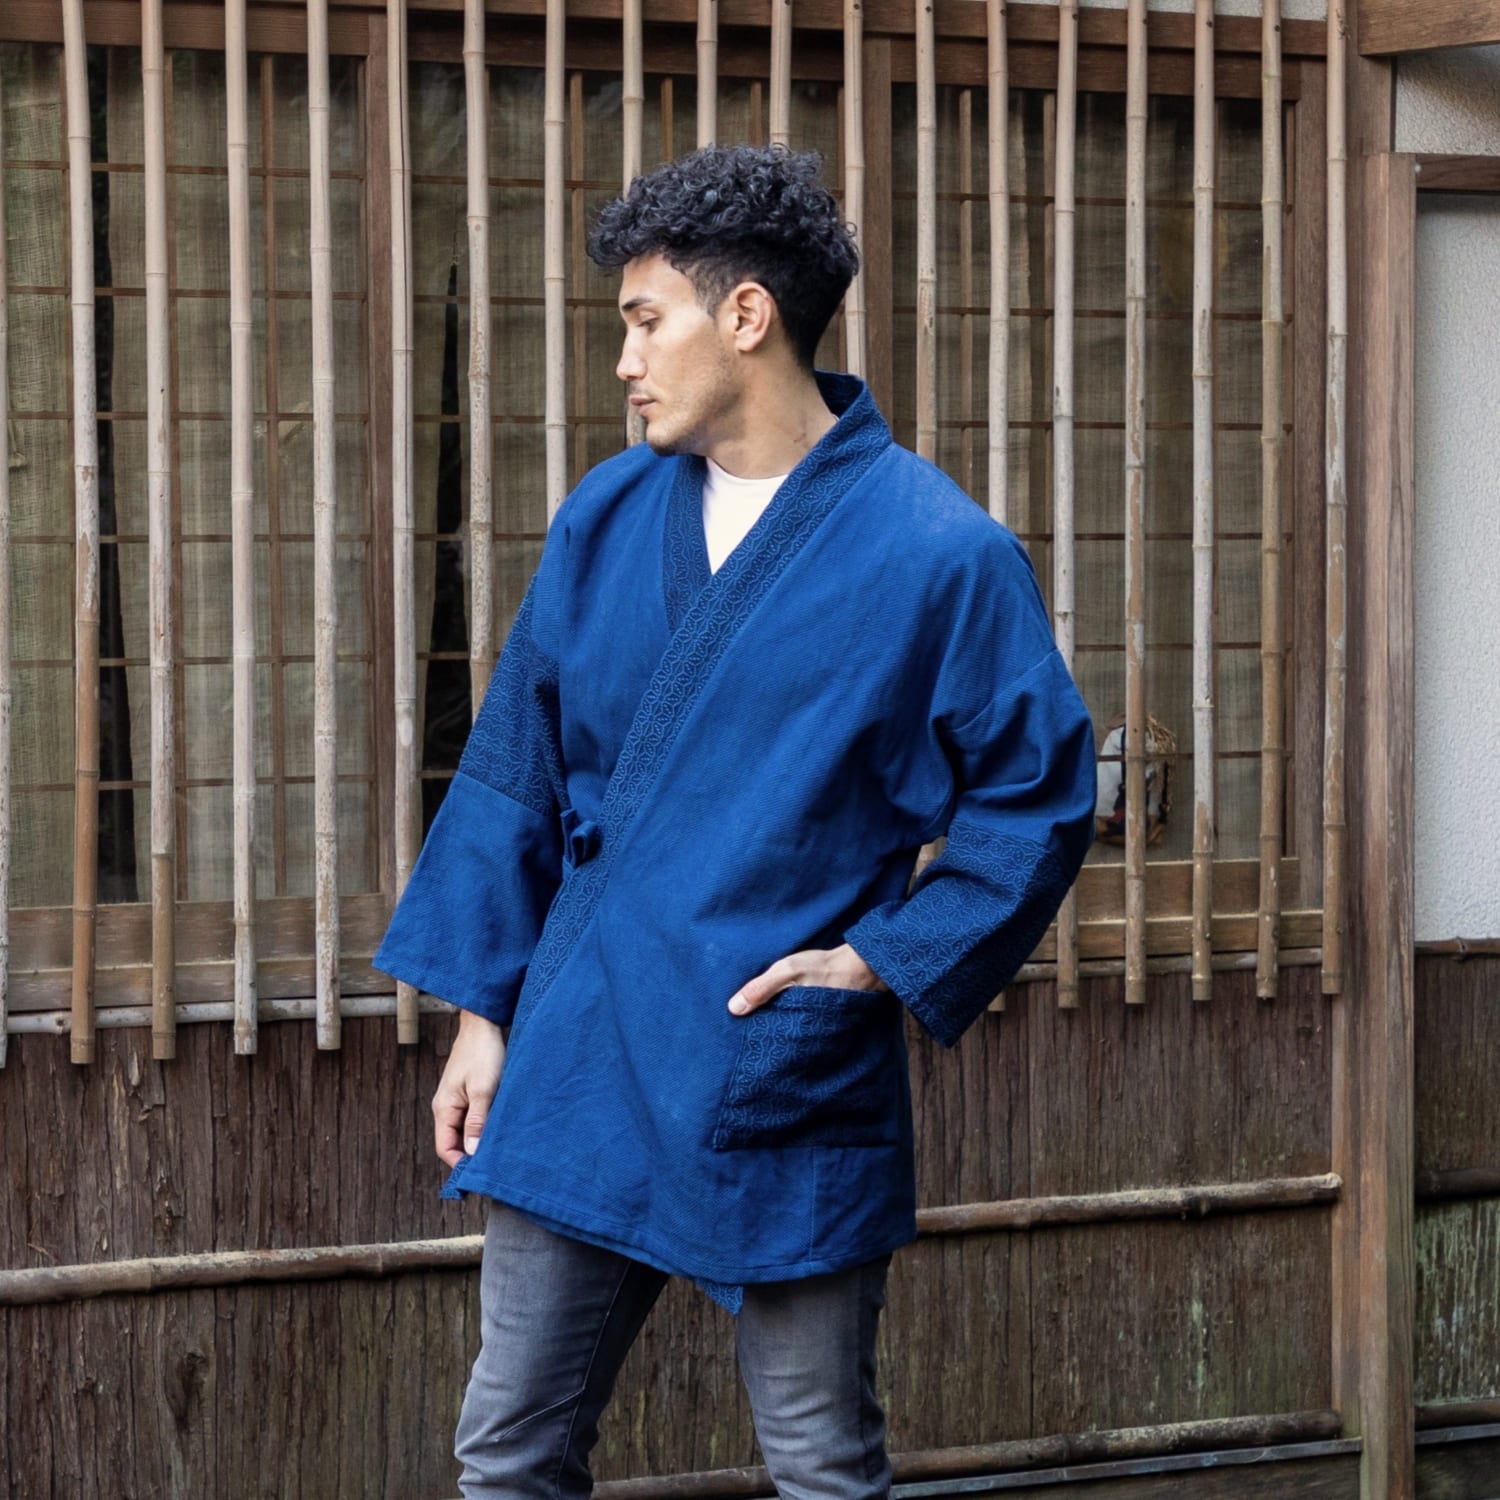 Patchwork Samue Jacket | Sashiko | Kimono style